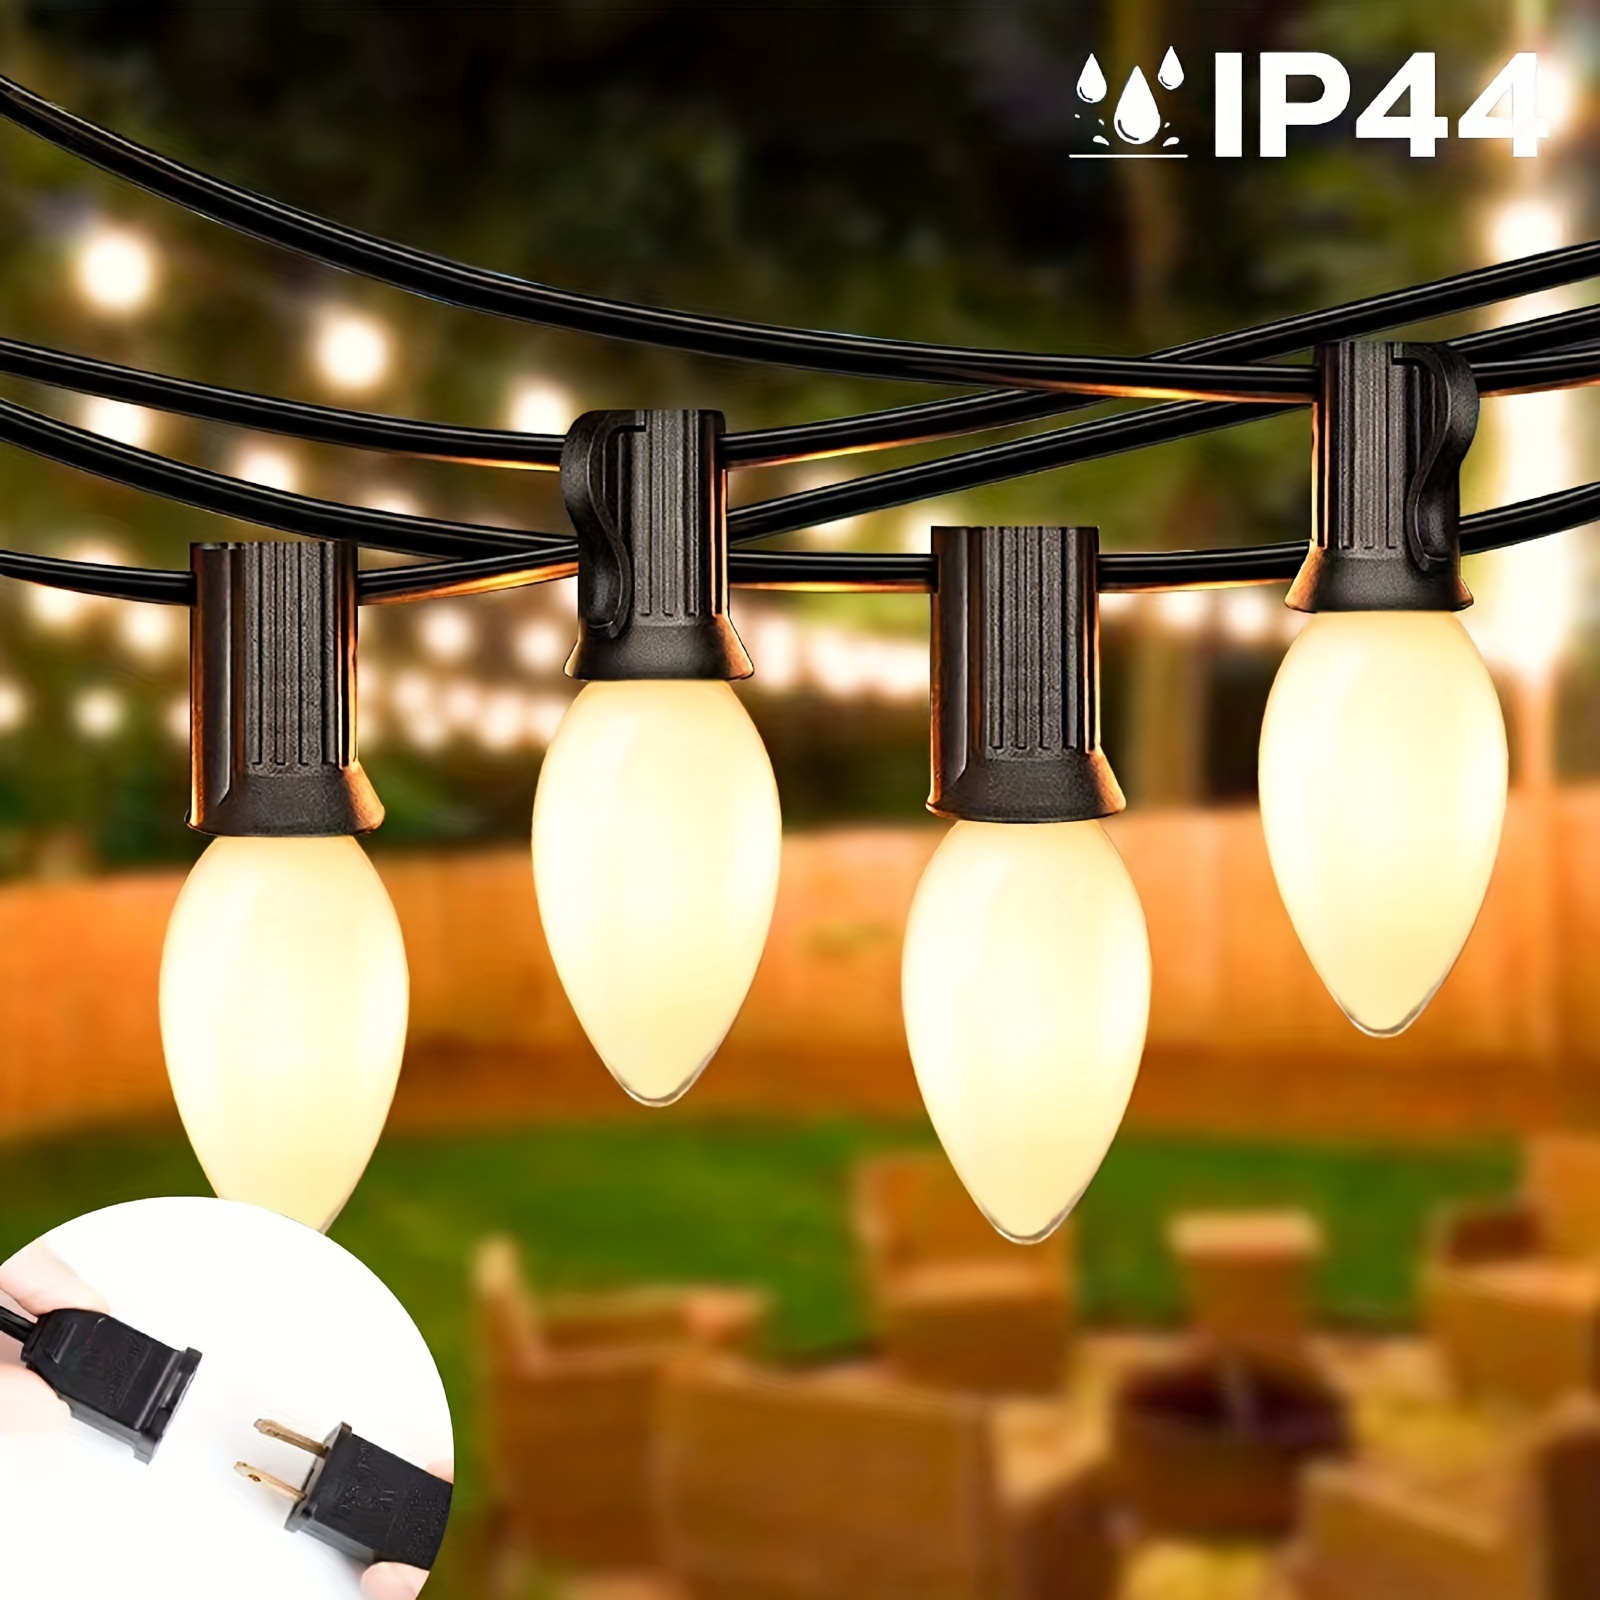 Mini ampoules à bougie C7, base Edison, filament LED à intensité